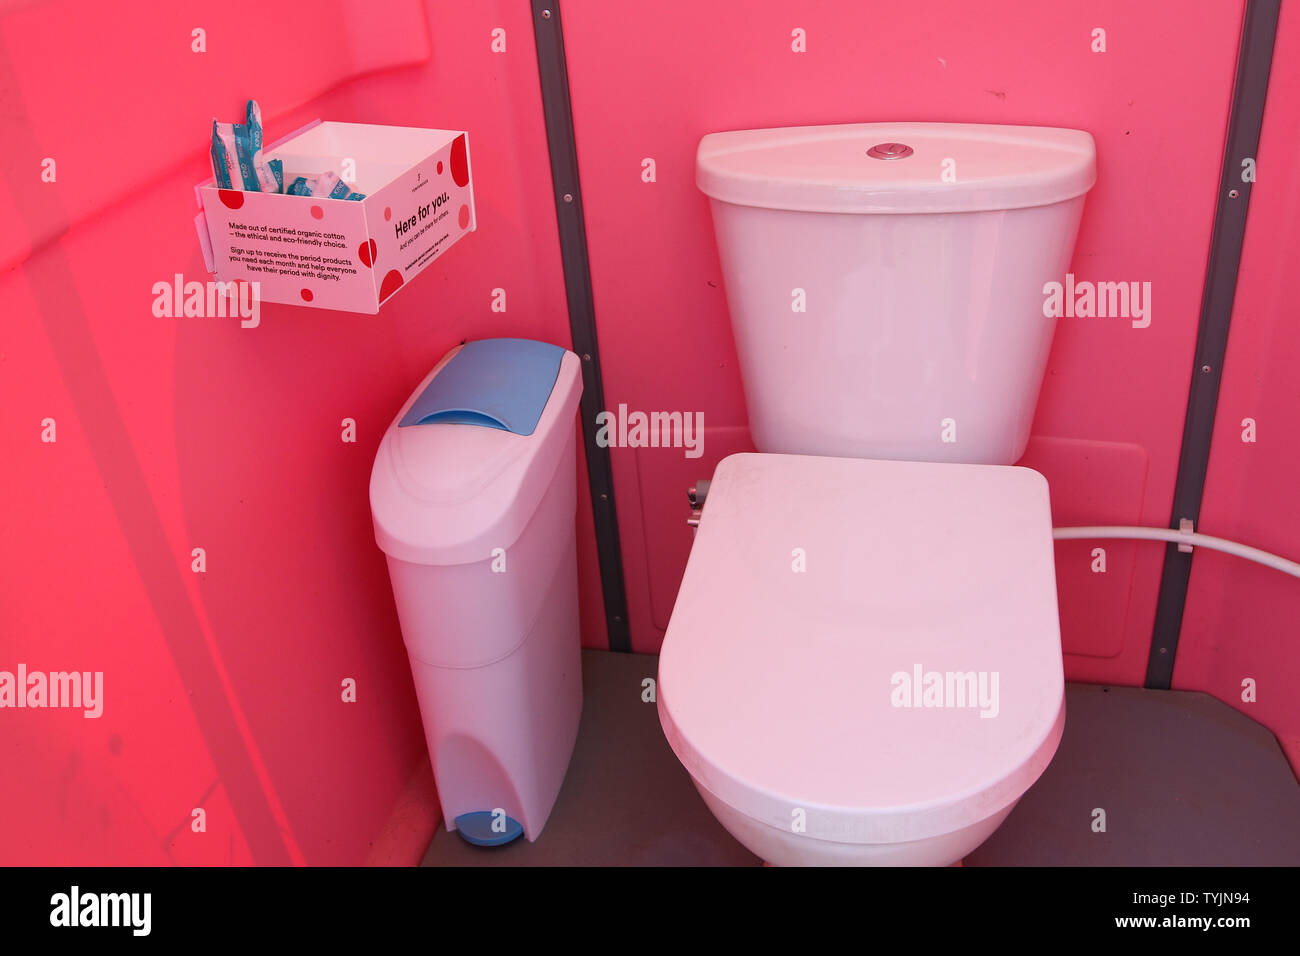 Baños de fotografías imágenes alta resolución - Alamy